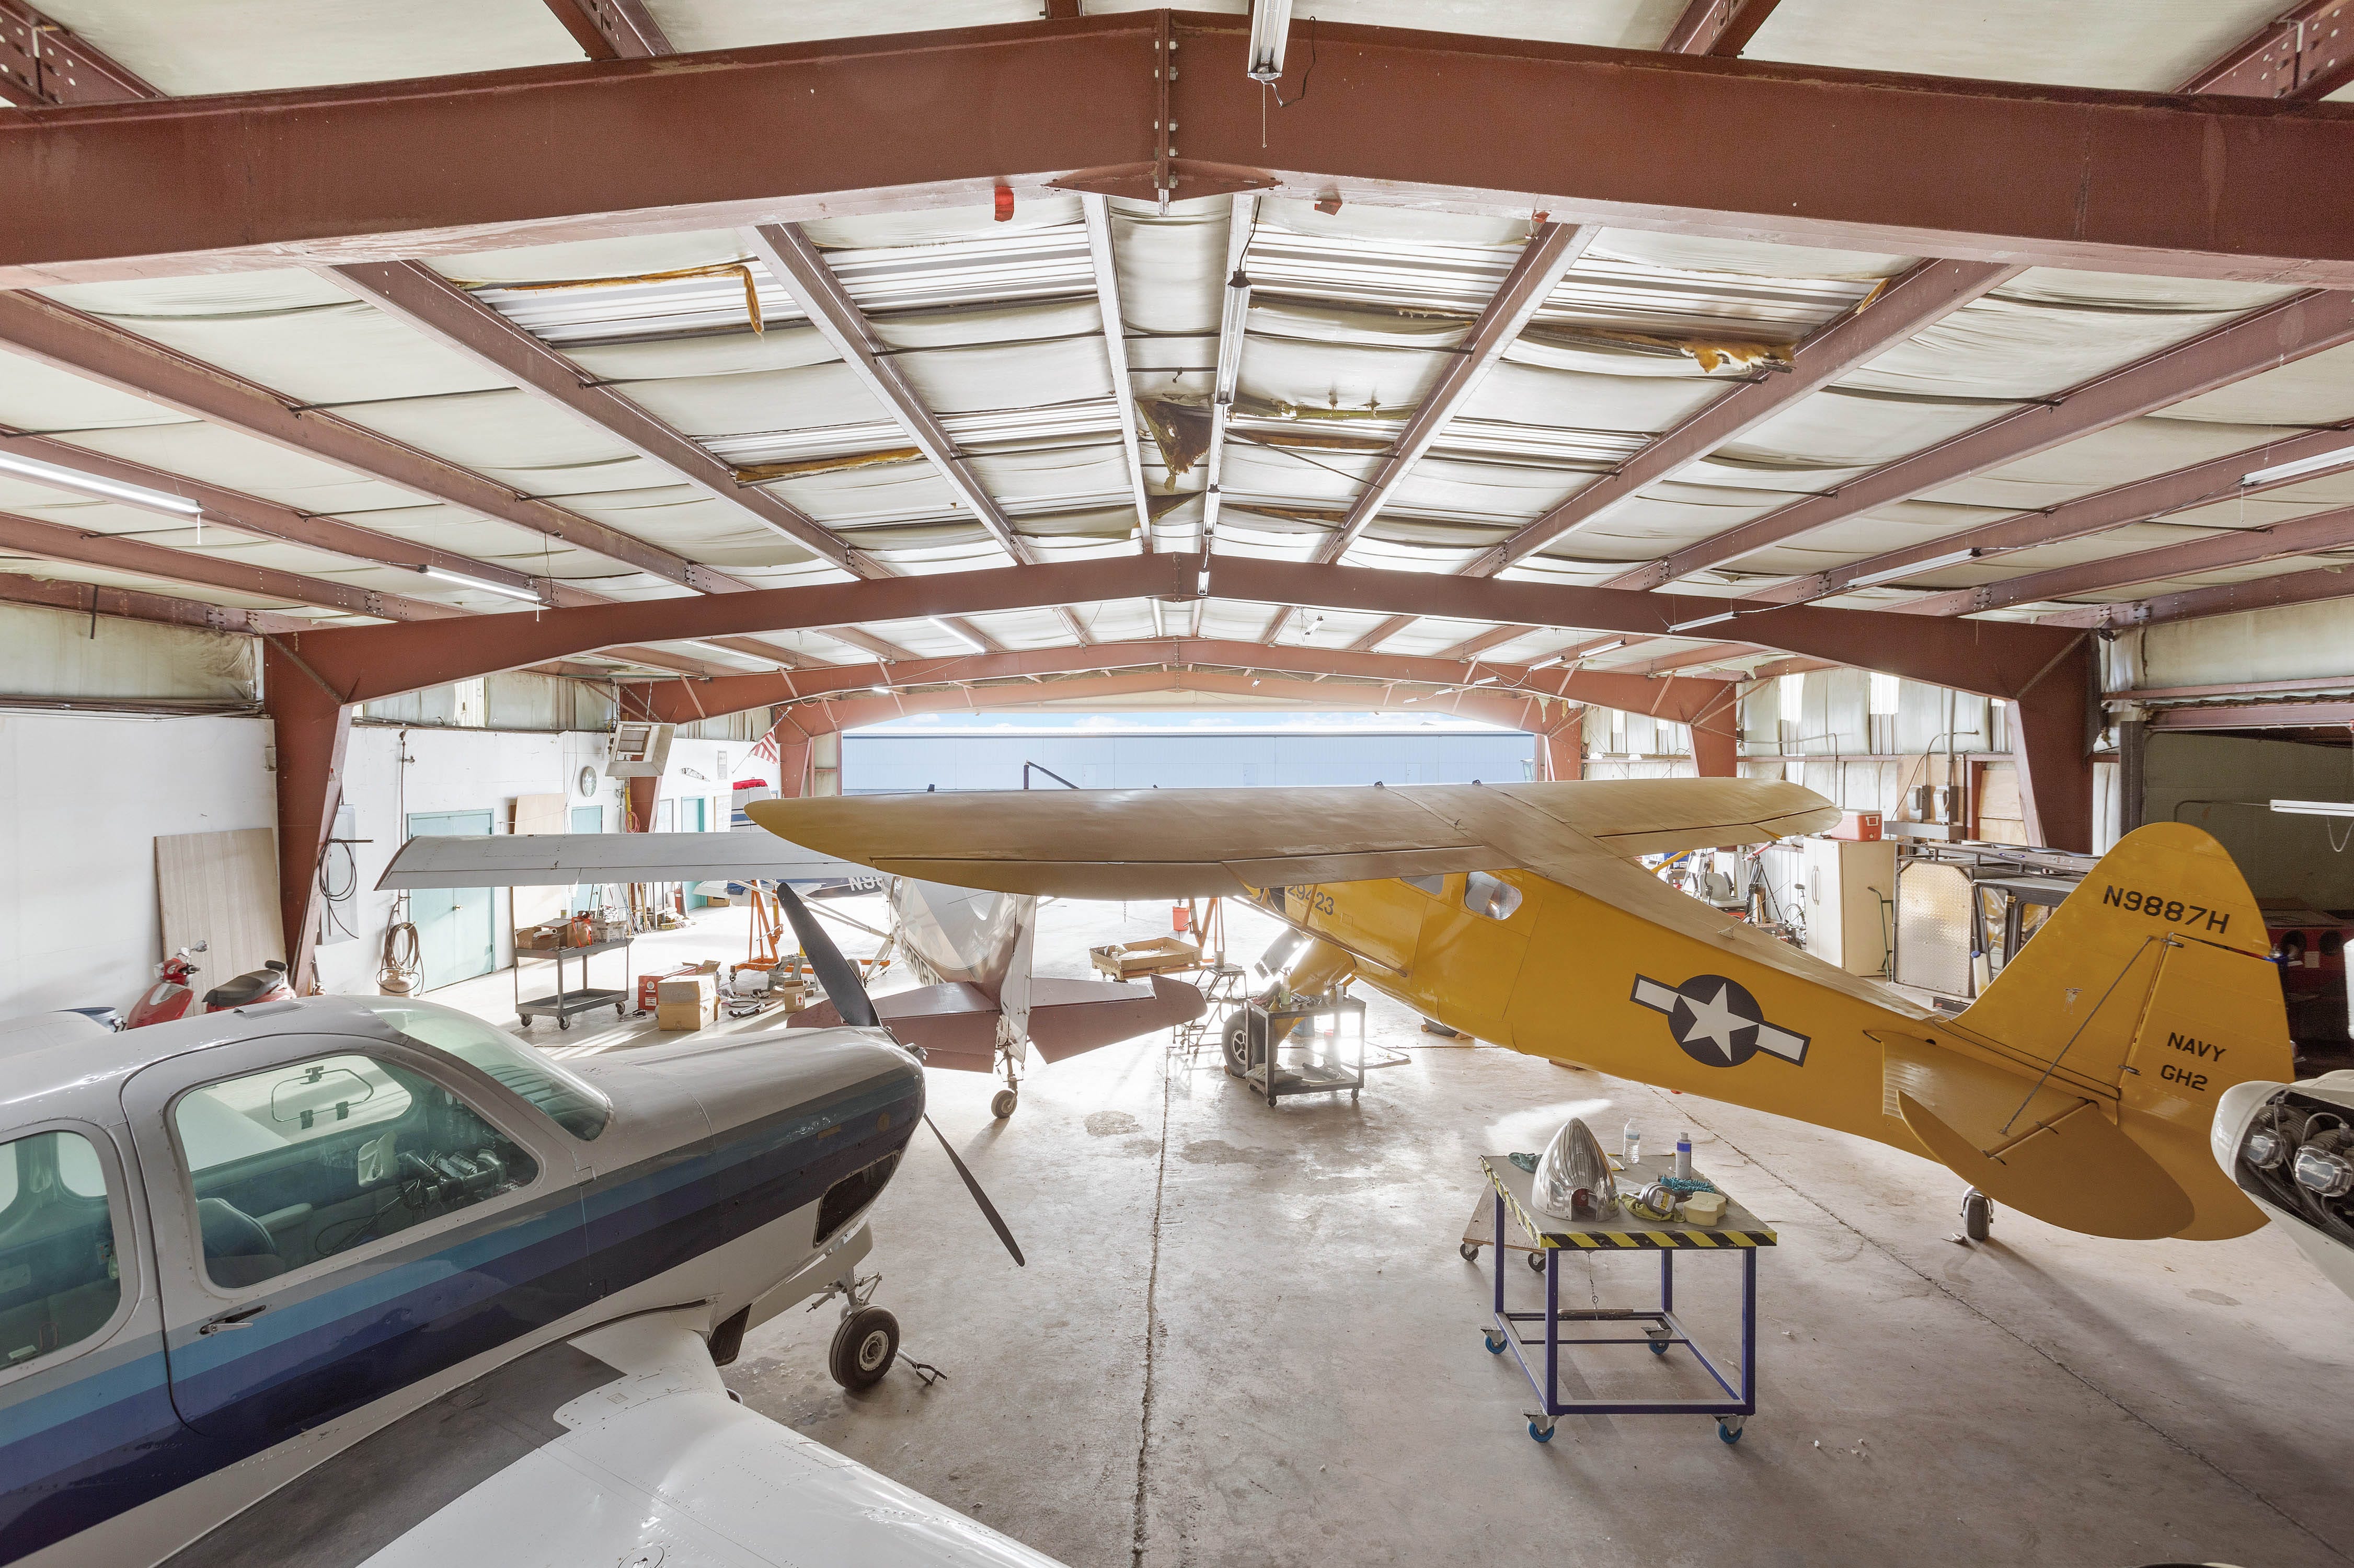 Antike Flugzeuge stehen in einem Hangar